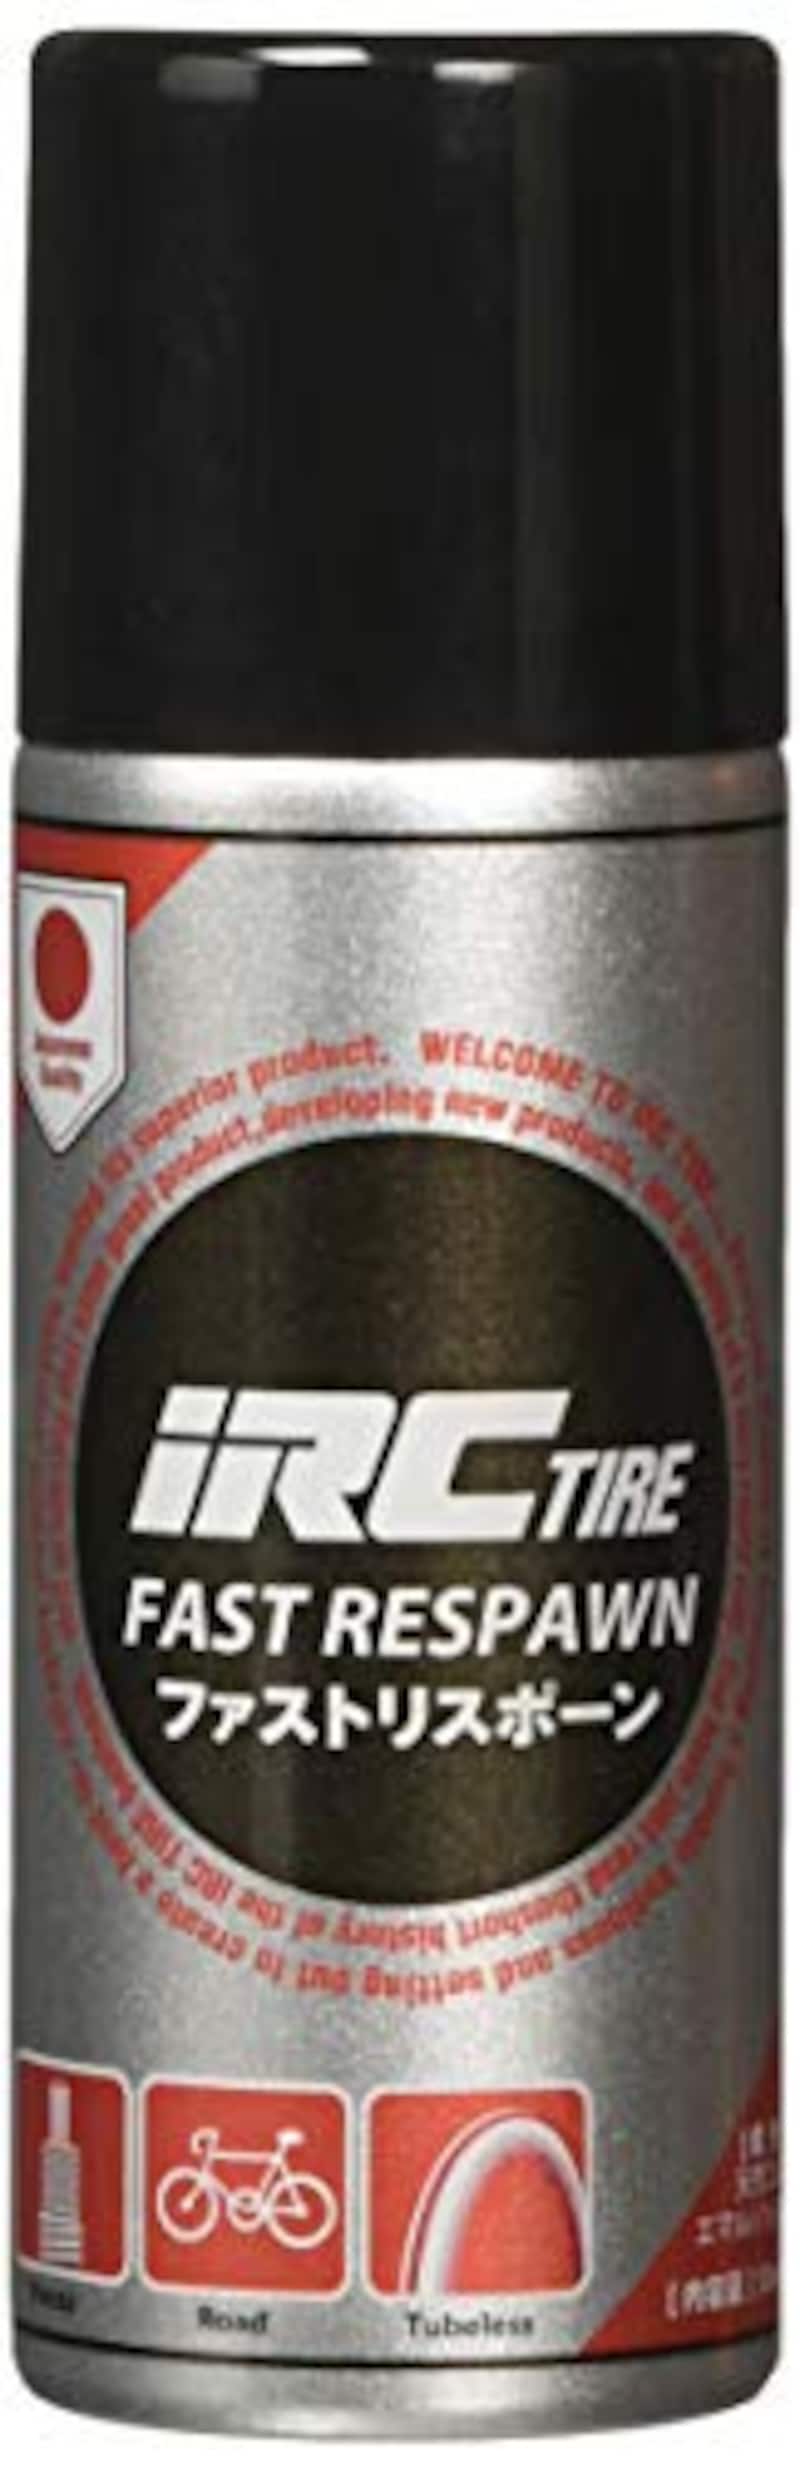 IRC tire,チューブレスタイヤ用修理剤FAST RESPAWN